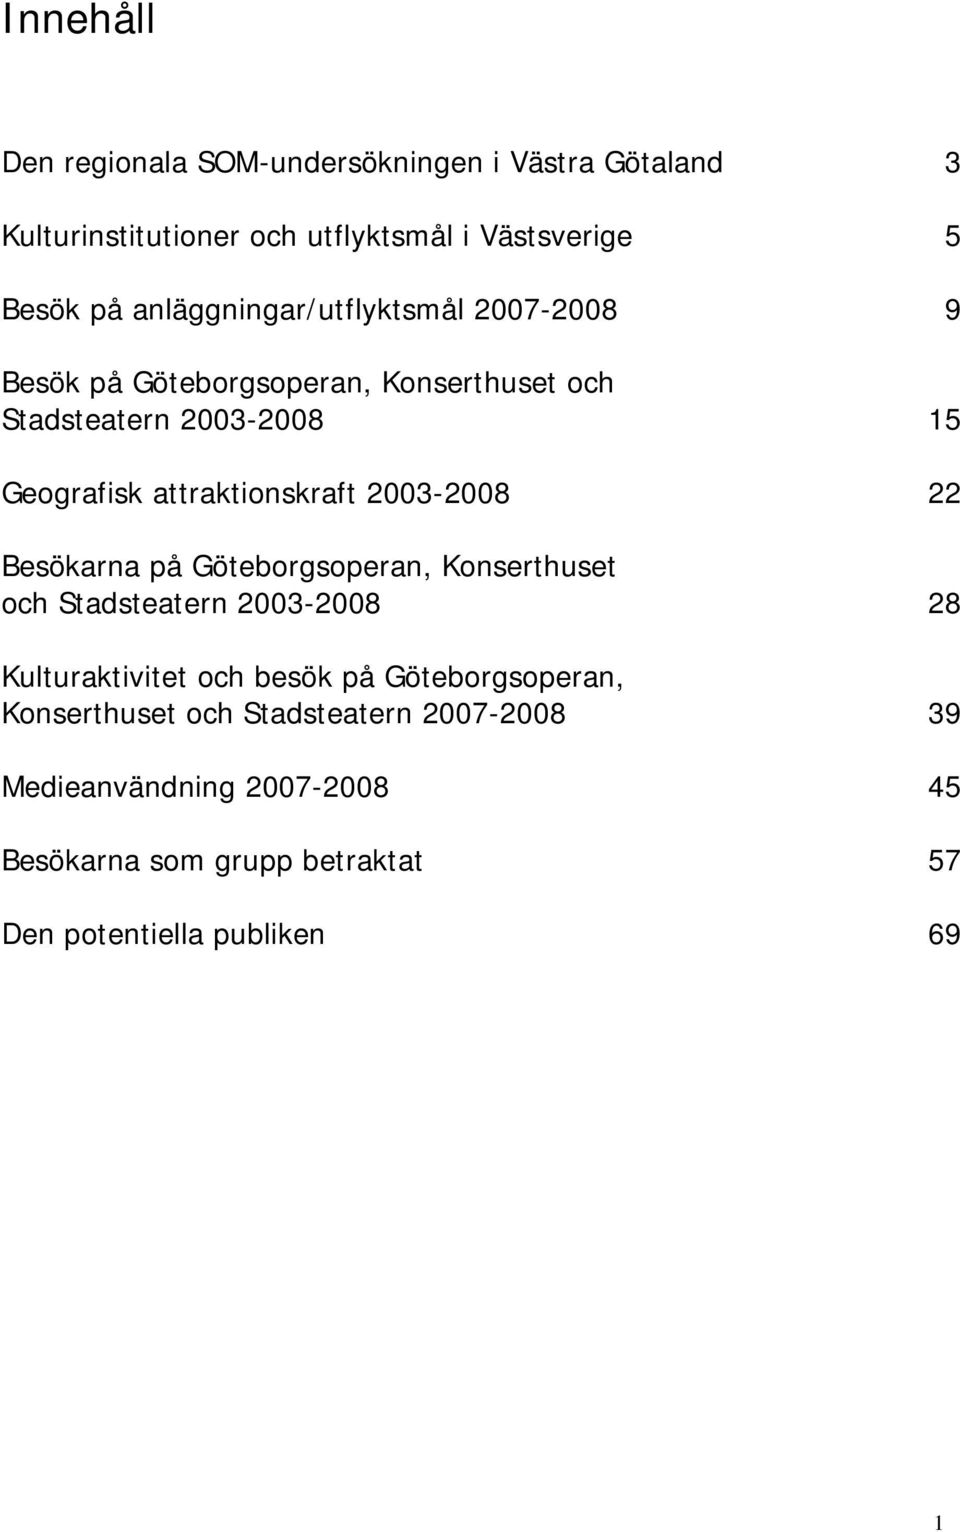 attraktionskraft 2003-2008 22 Besökarna på Göteborgsoperan, Konserthuset och Stadsteatern 2003-2008 28 Kulturaktivitet och besök